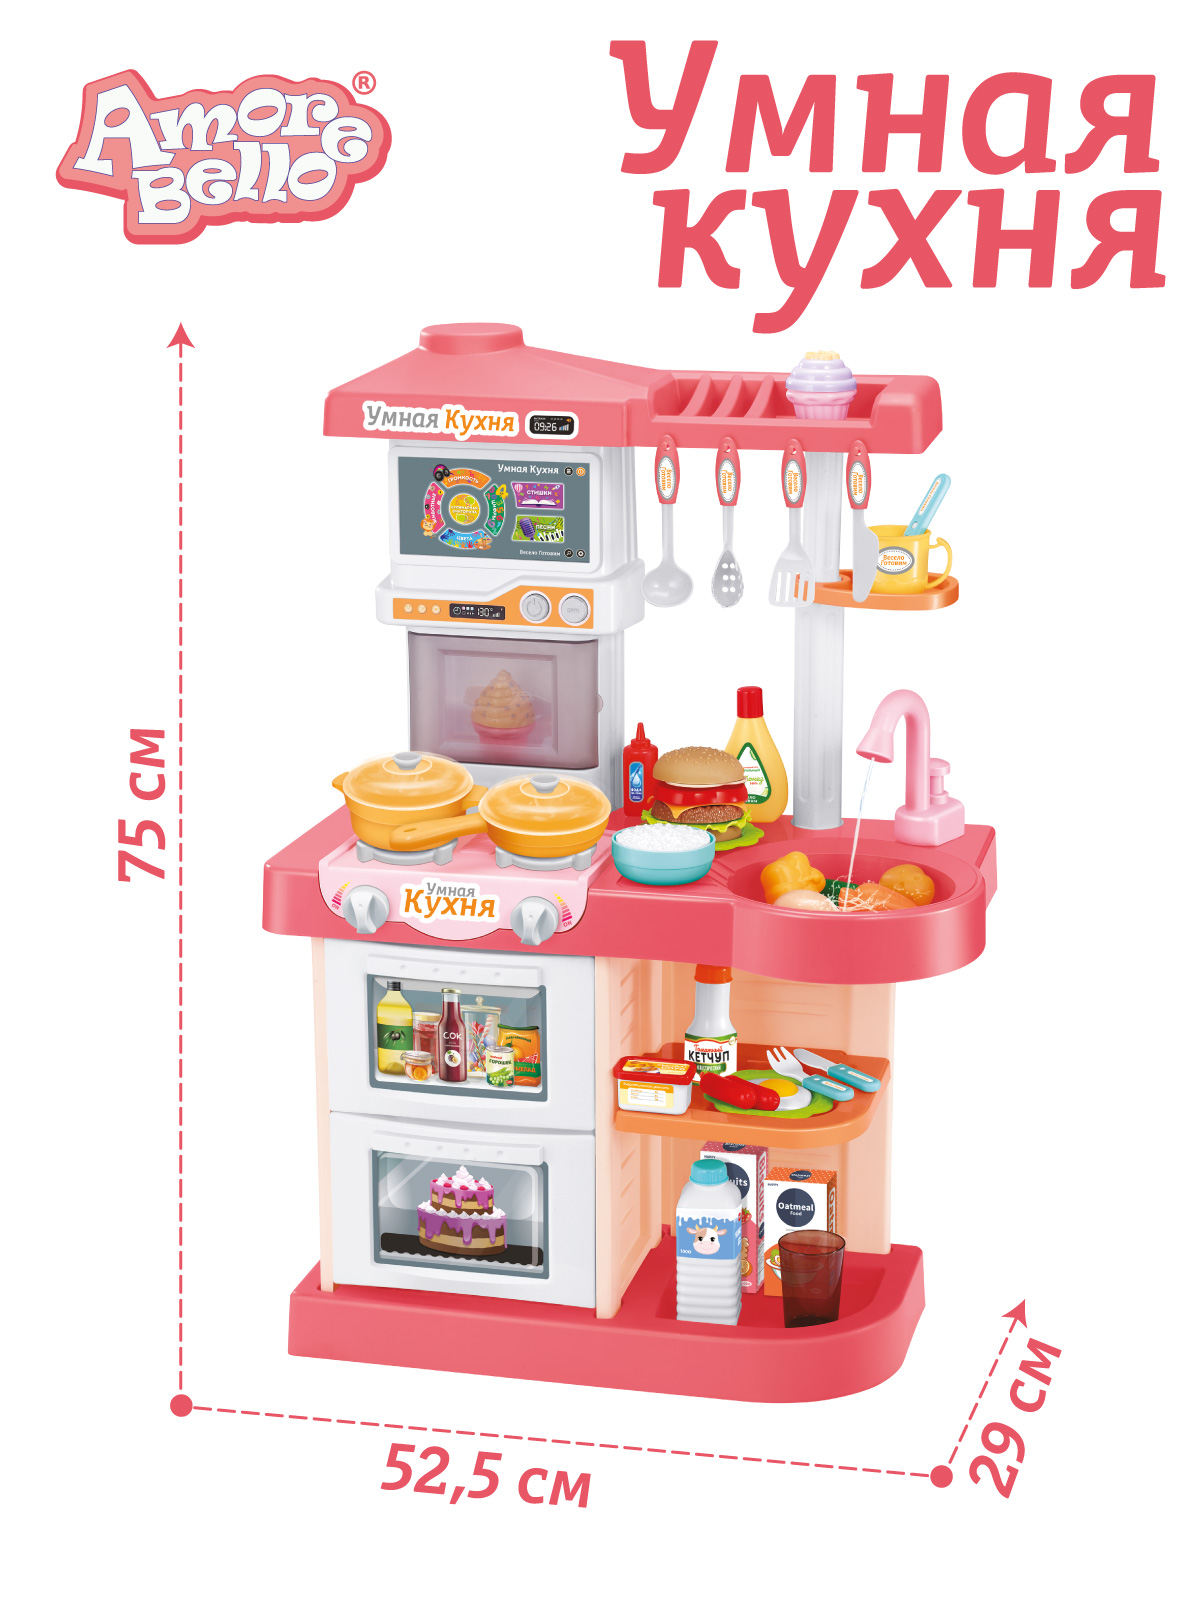 Игровой набор детский AMORE BELLO Умная Кухня с пультом с паром и кран с водой игрушечные продукты и посуда JB0209161 - фото 1